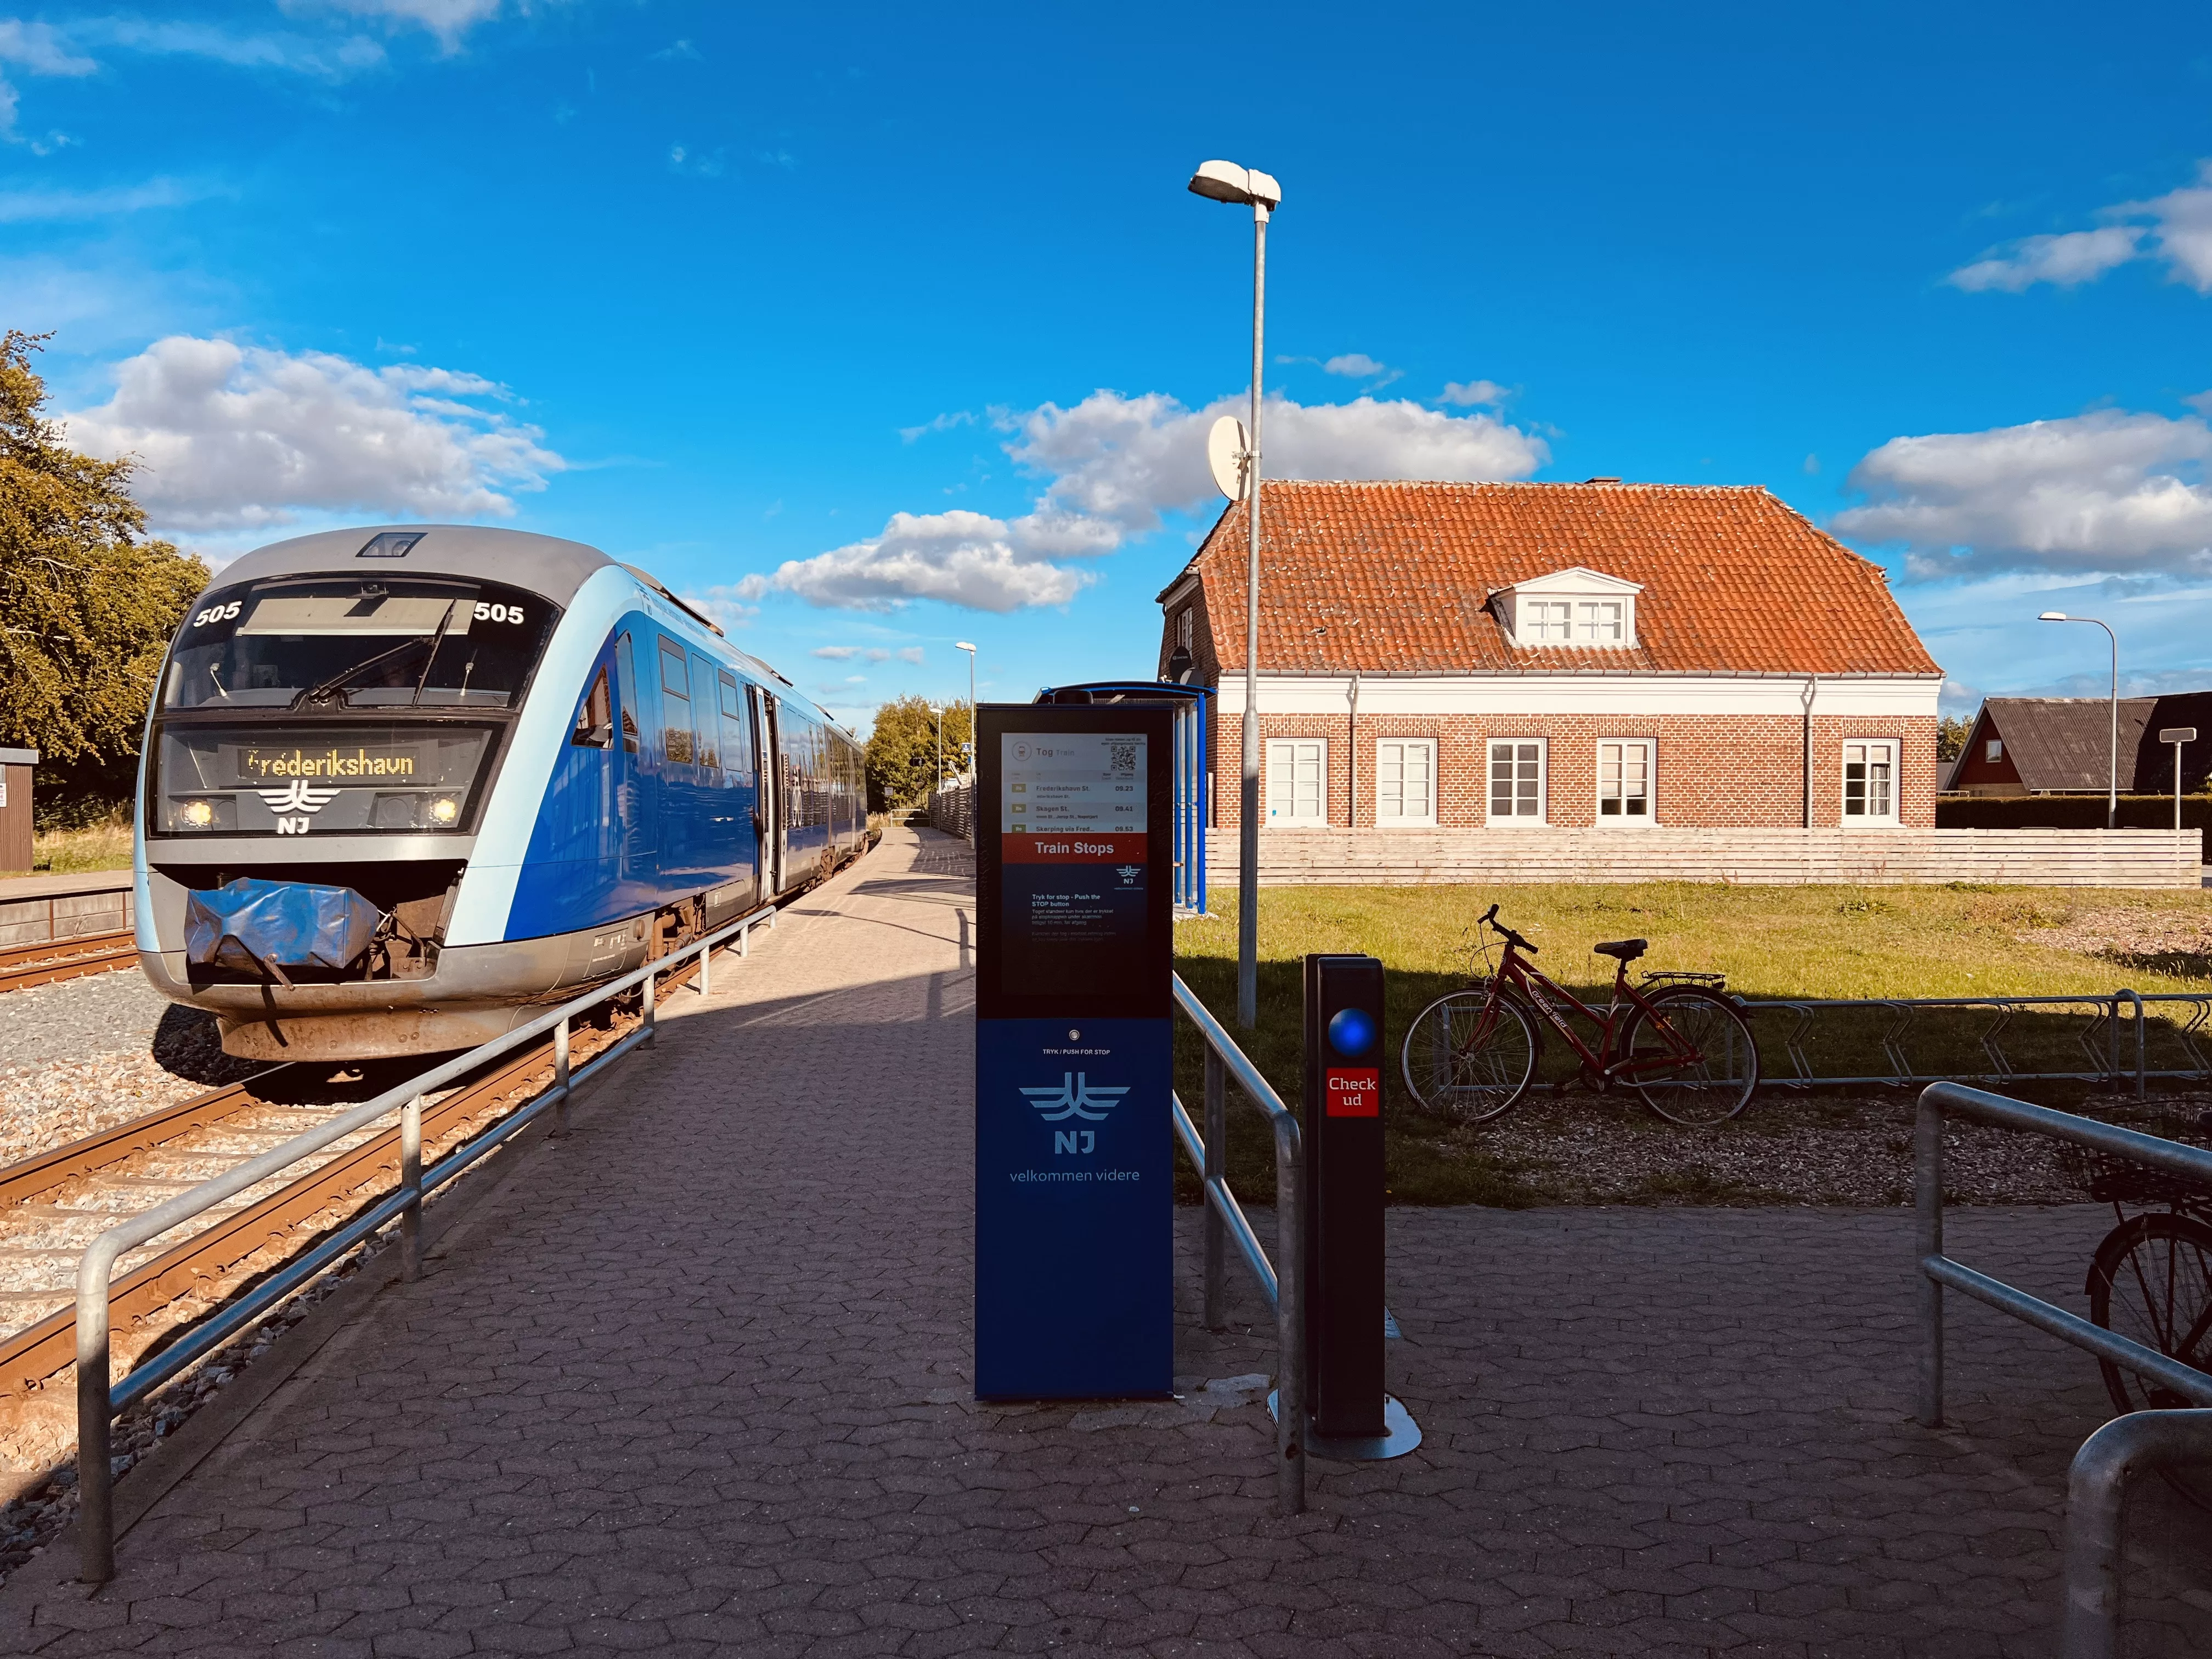 Billede af tog ud for Strandby Trinbræt.